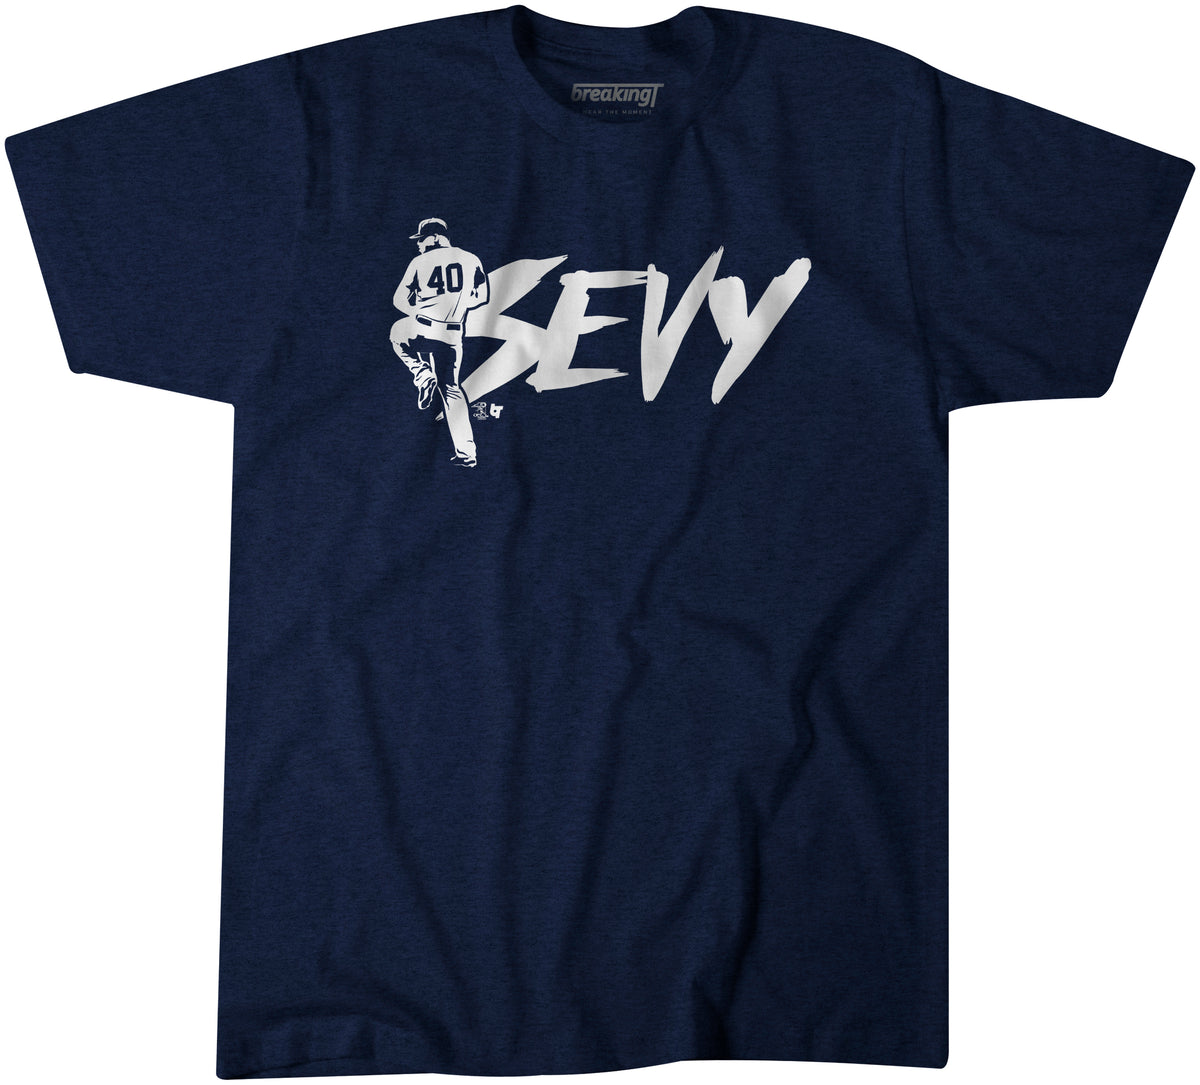 Sevy, 2XL - MLB - Navy Blue - Sports Fan Gear | breakingt